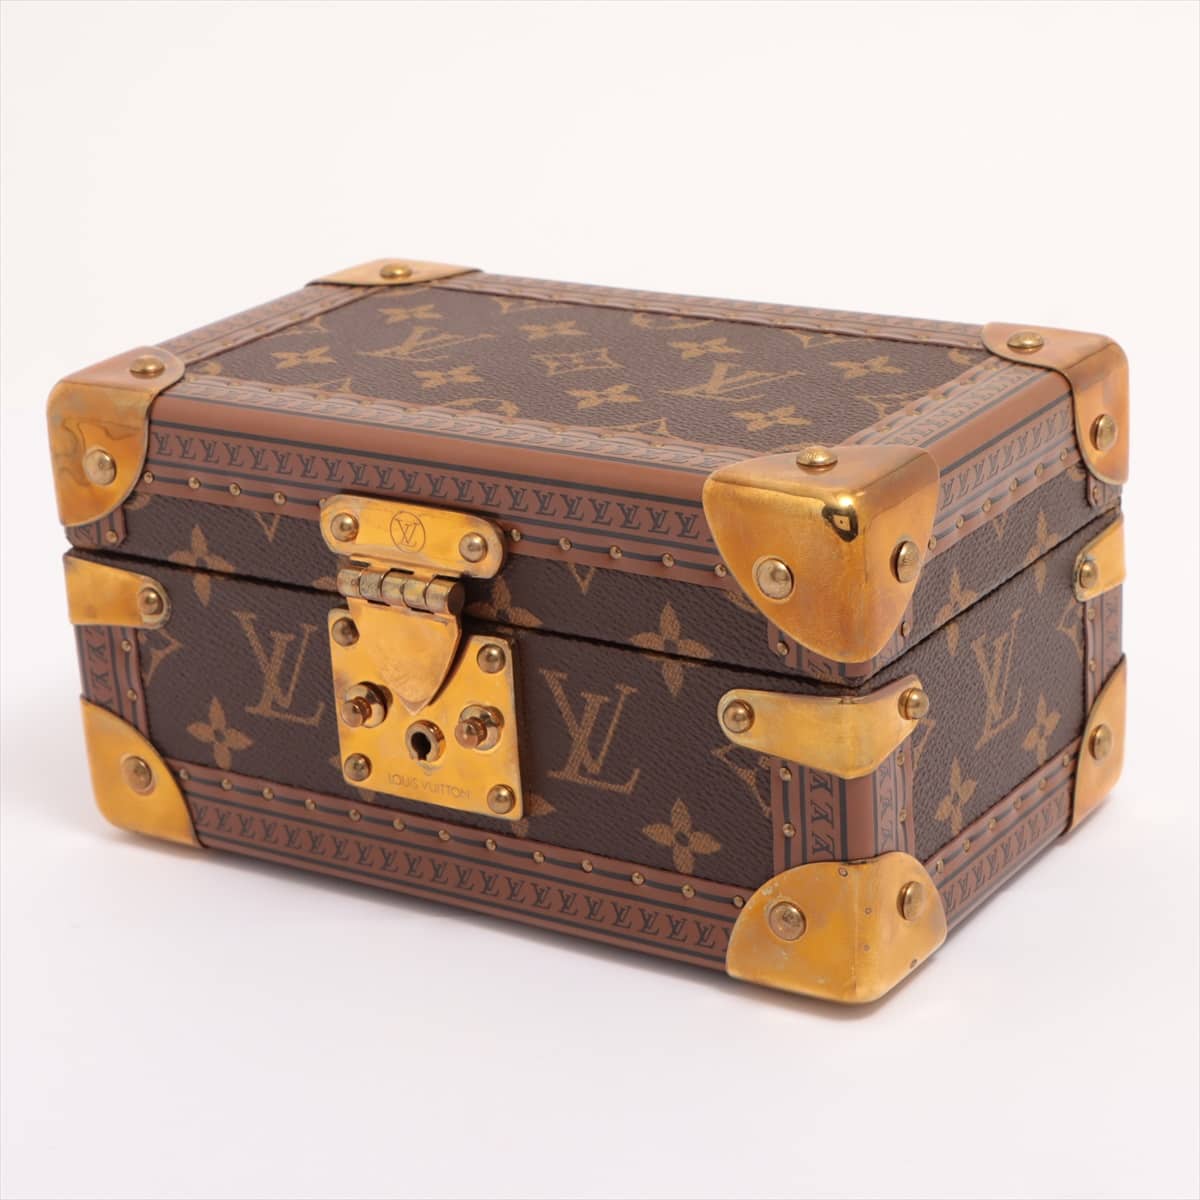 Louis Vuitton M47004 Coffret Tresor 20 AS0182 Jewelry case PVC & leather Brown